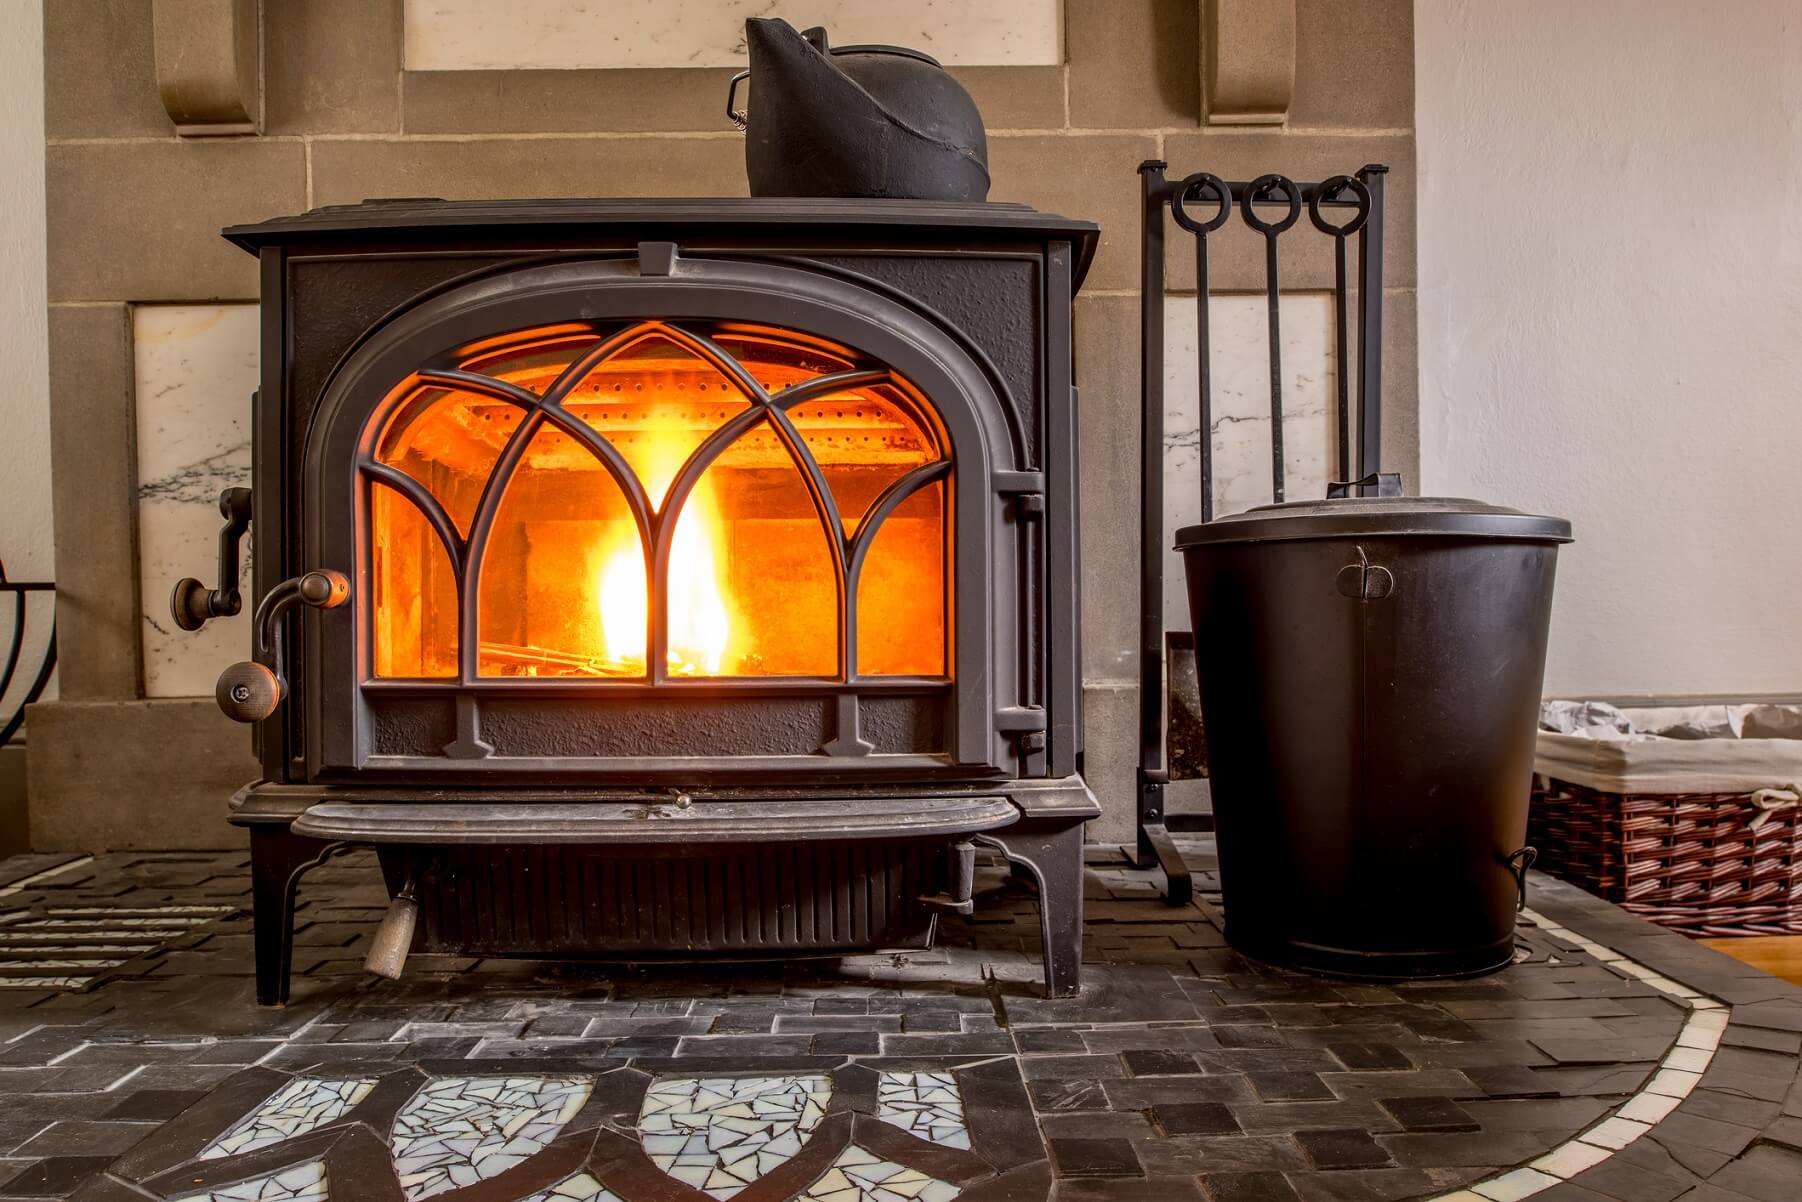 Moderner brennender Kaminofen aus Gusseisen im Wohnraum mit gusseisernem Teekessel zur Luftbefeuchtung oben auf dem Ofen